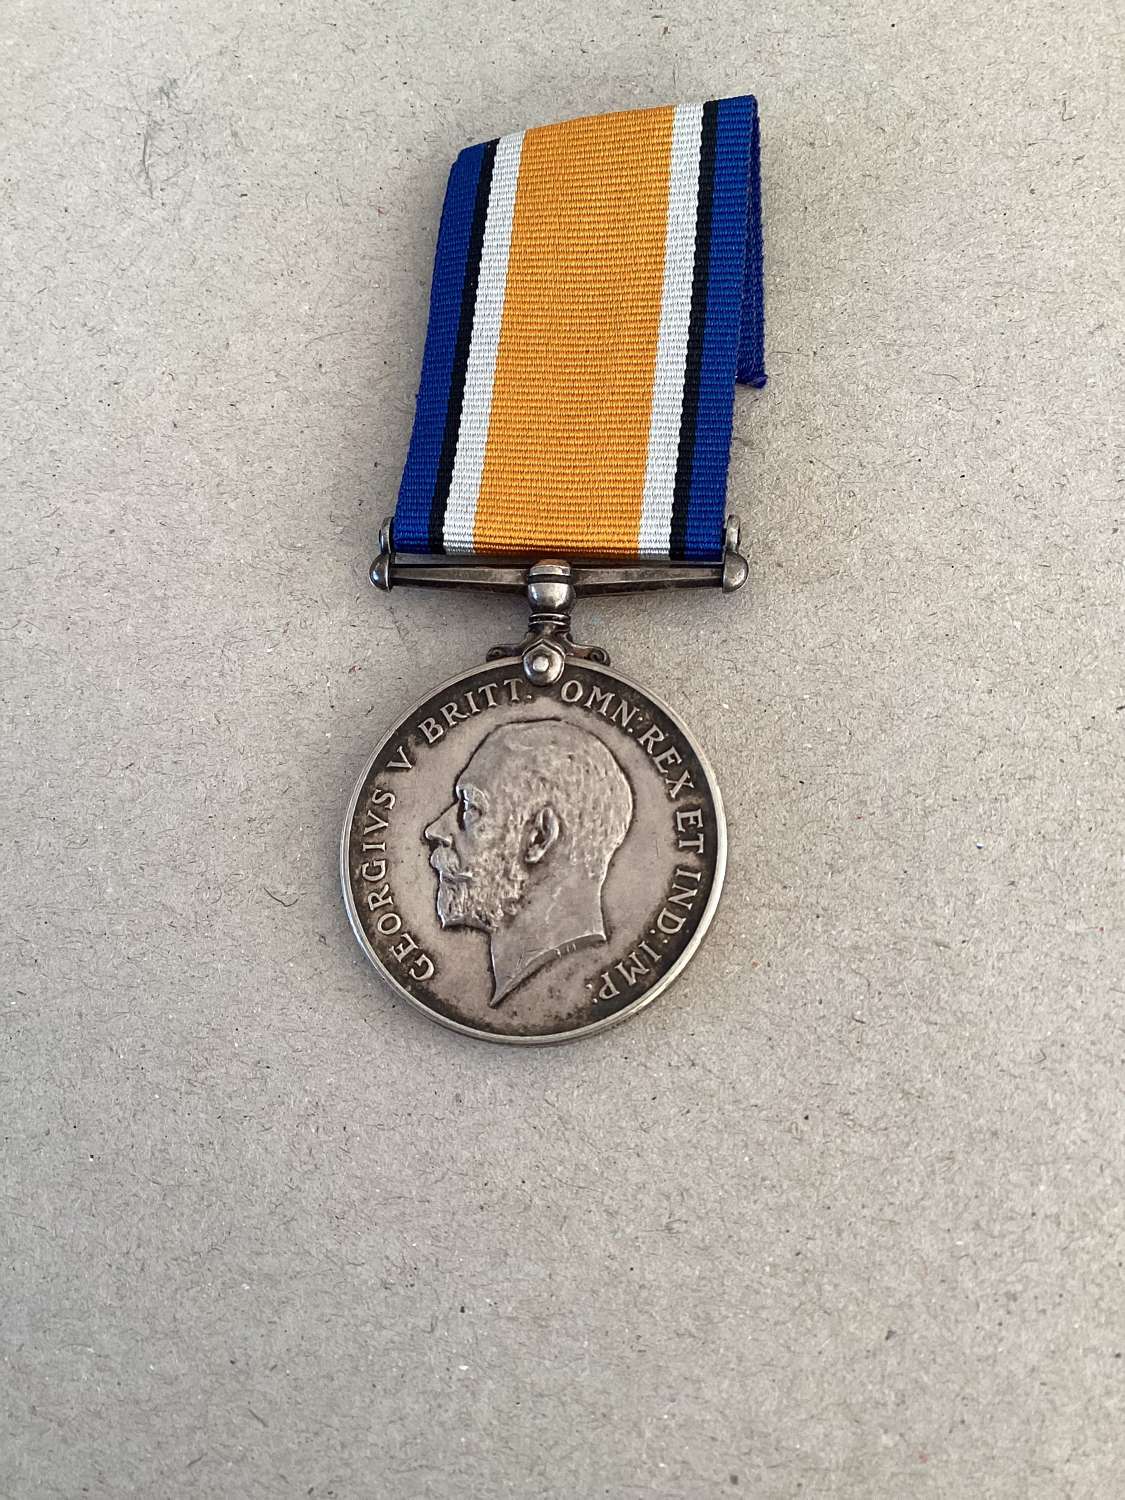 British War Medal (J.15464 Lethieullier RN) born Mile End London